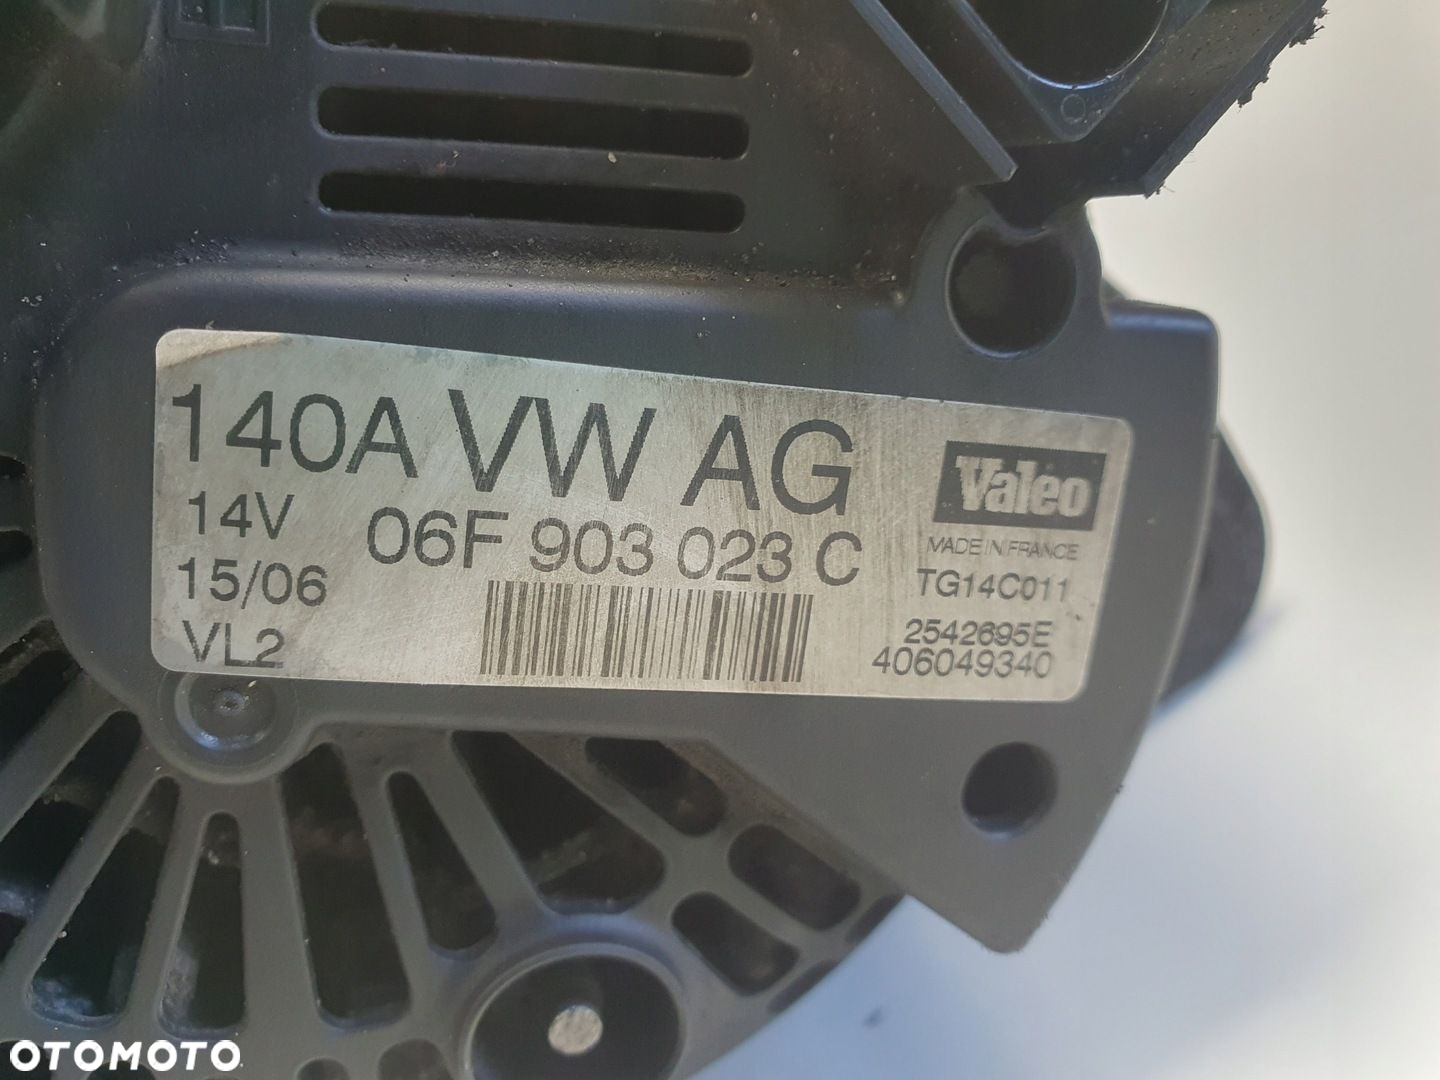 VW Golf V 2.0 TDI ALTERNATOR 140A 06F903023C valeo - 2